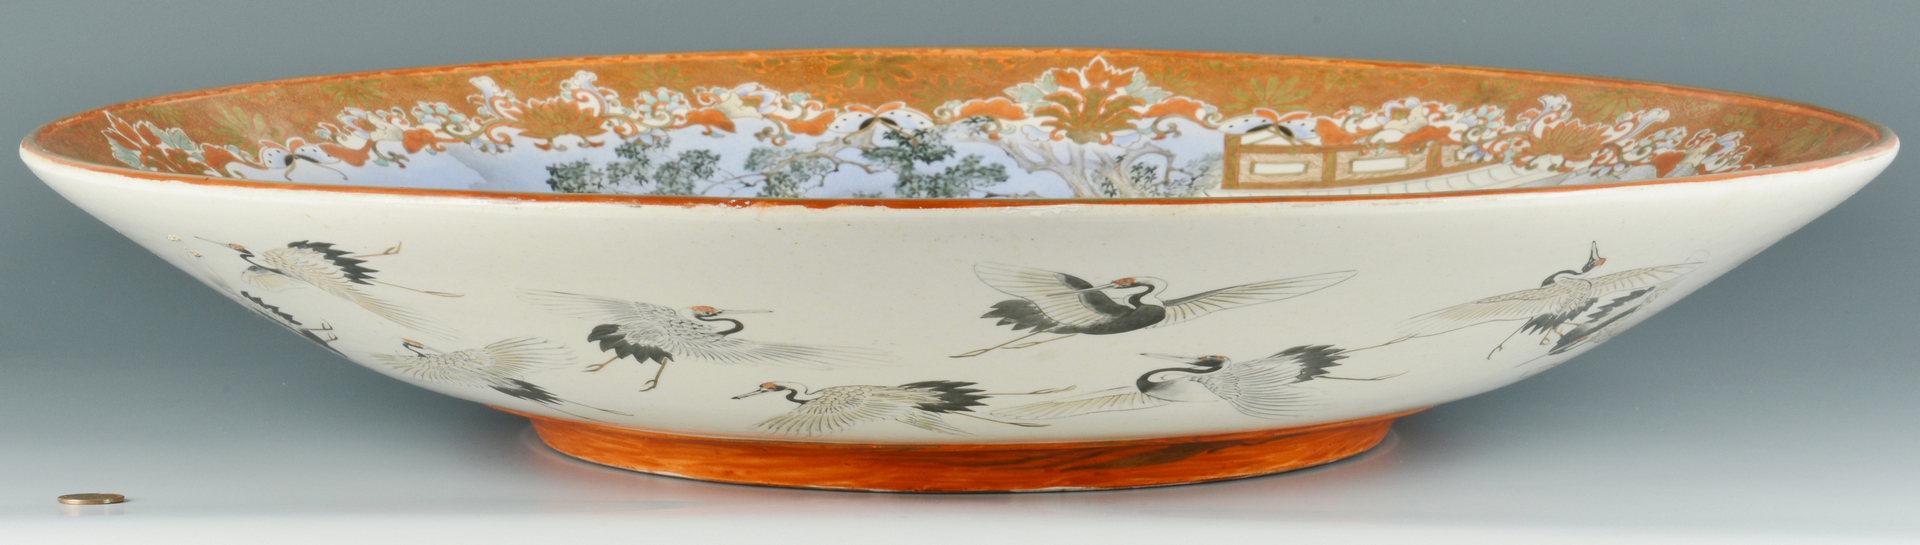 Lot 3088090: Massive Japanese Meiji Porcelain Charger